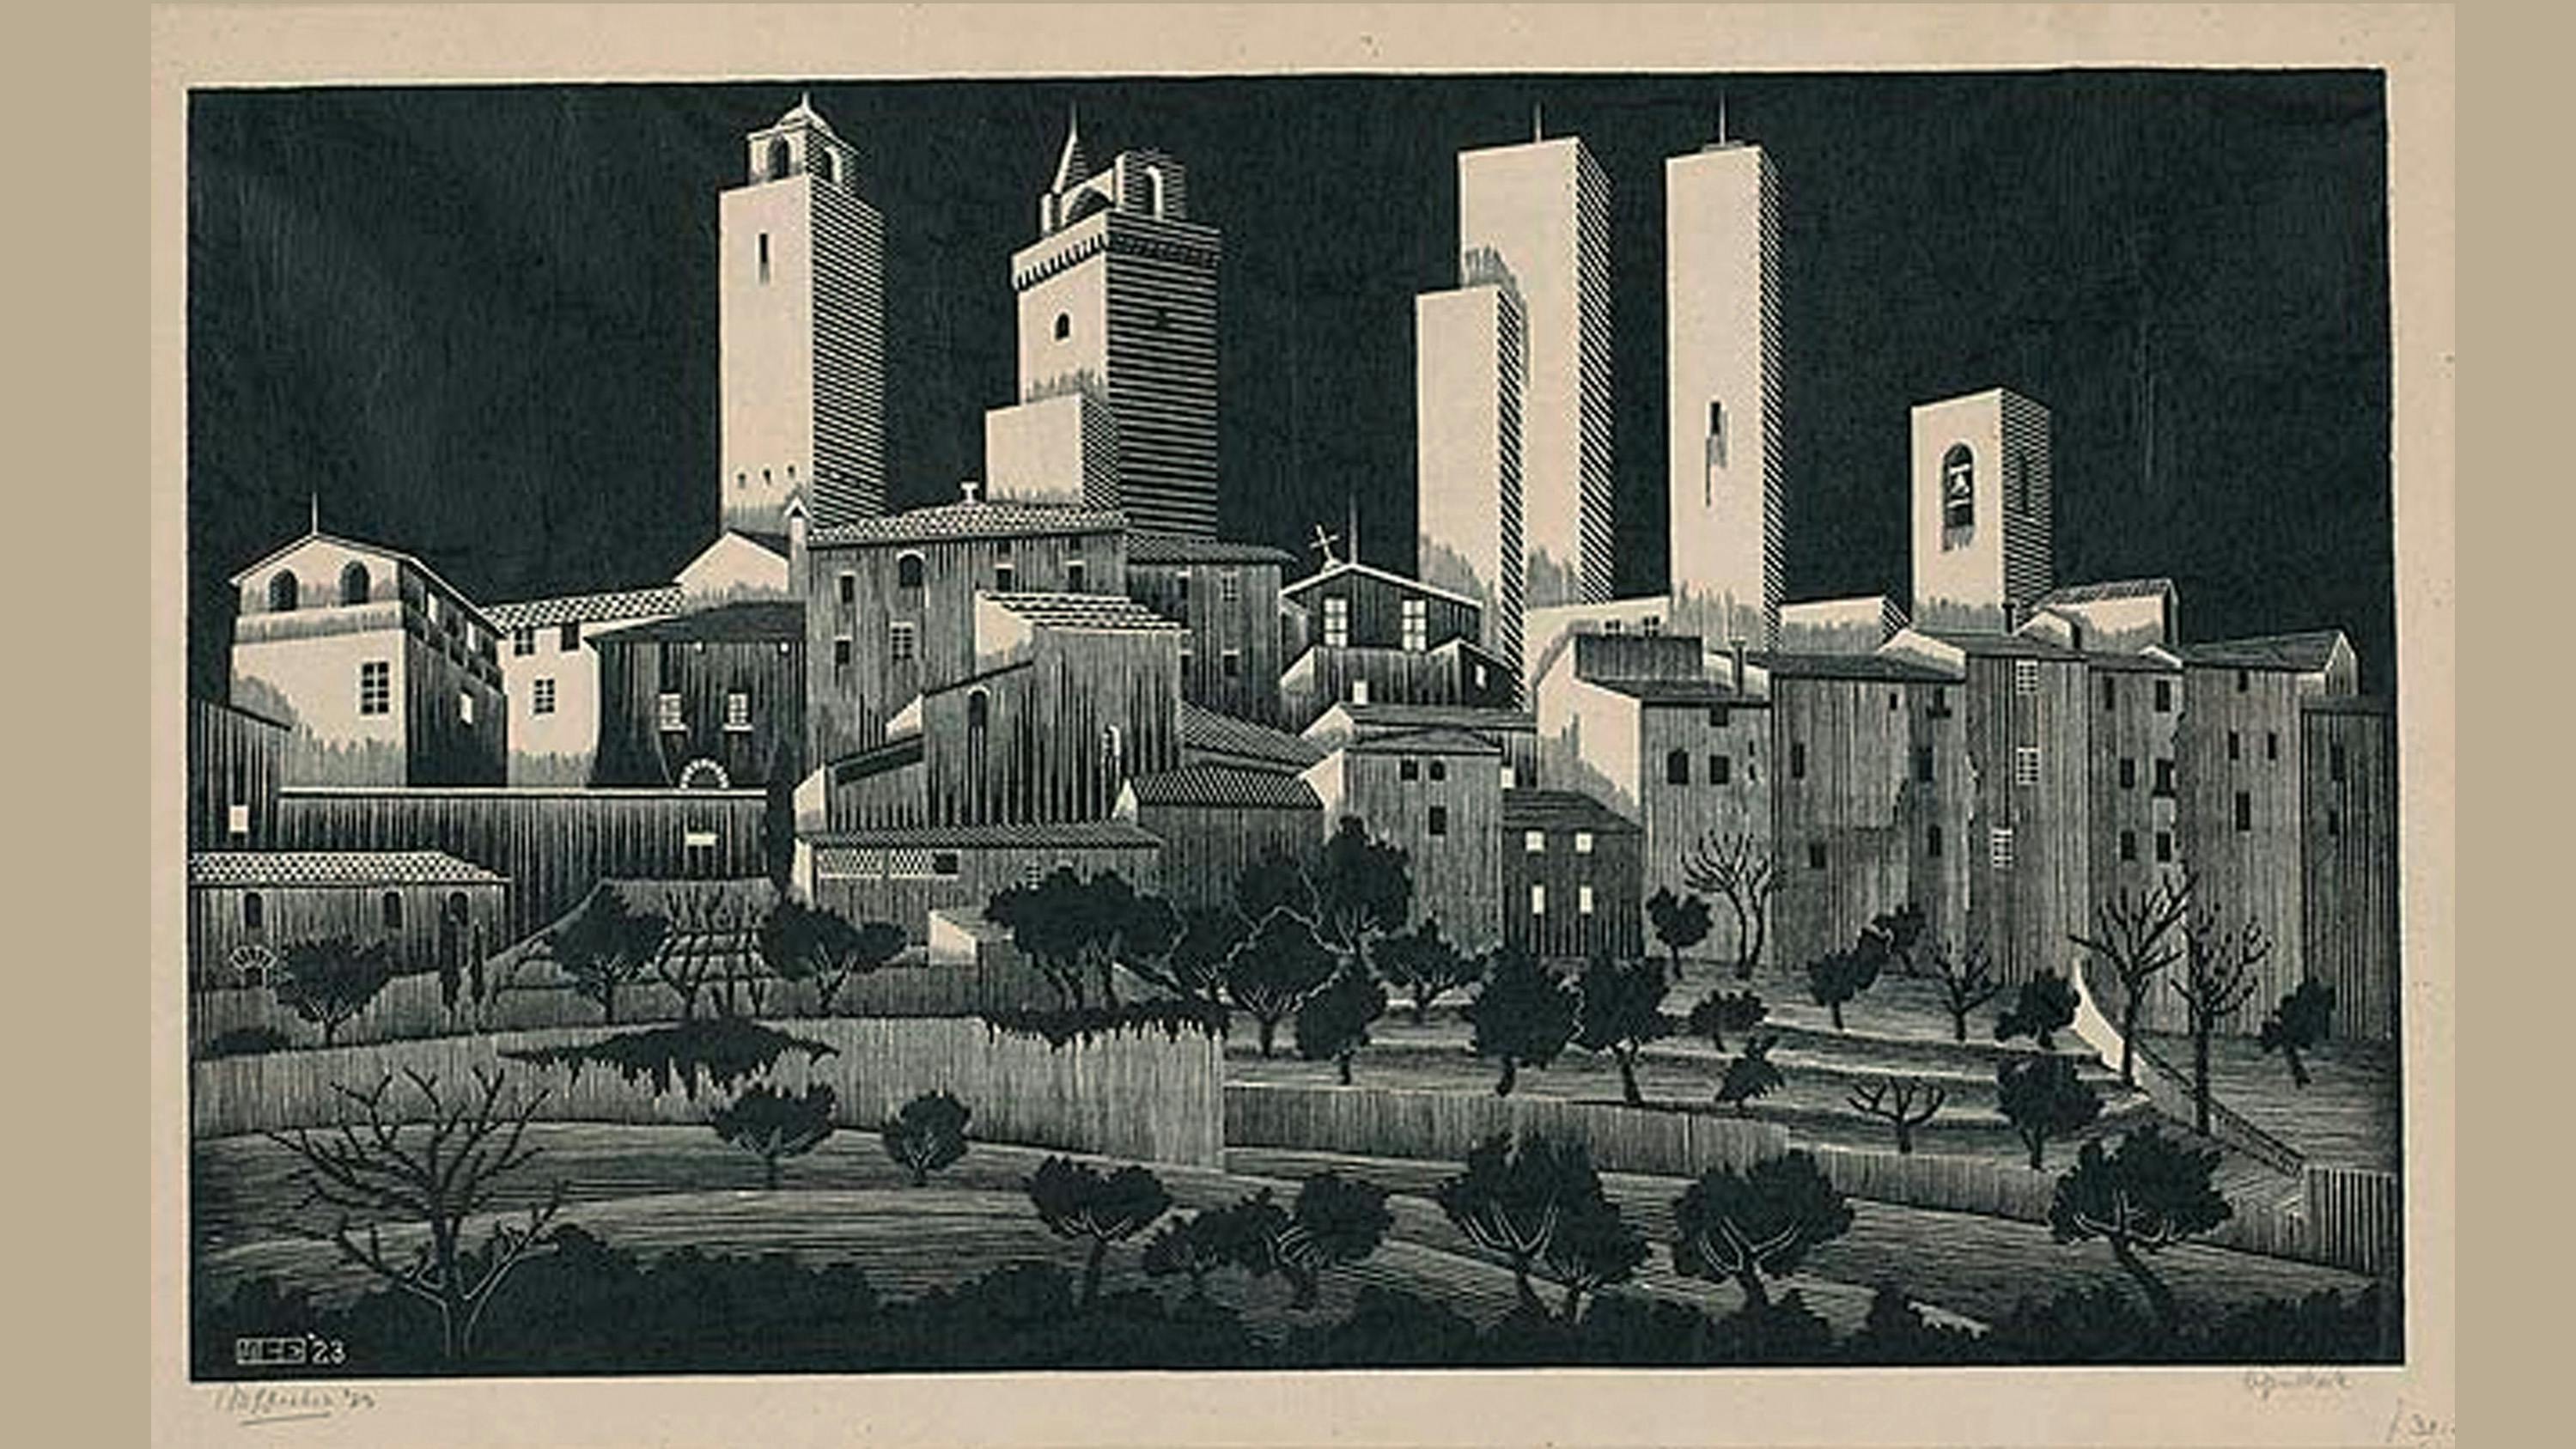 Maurits Cornelis Escher, "San Gimignano", 1923